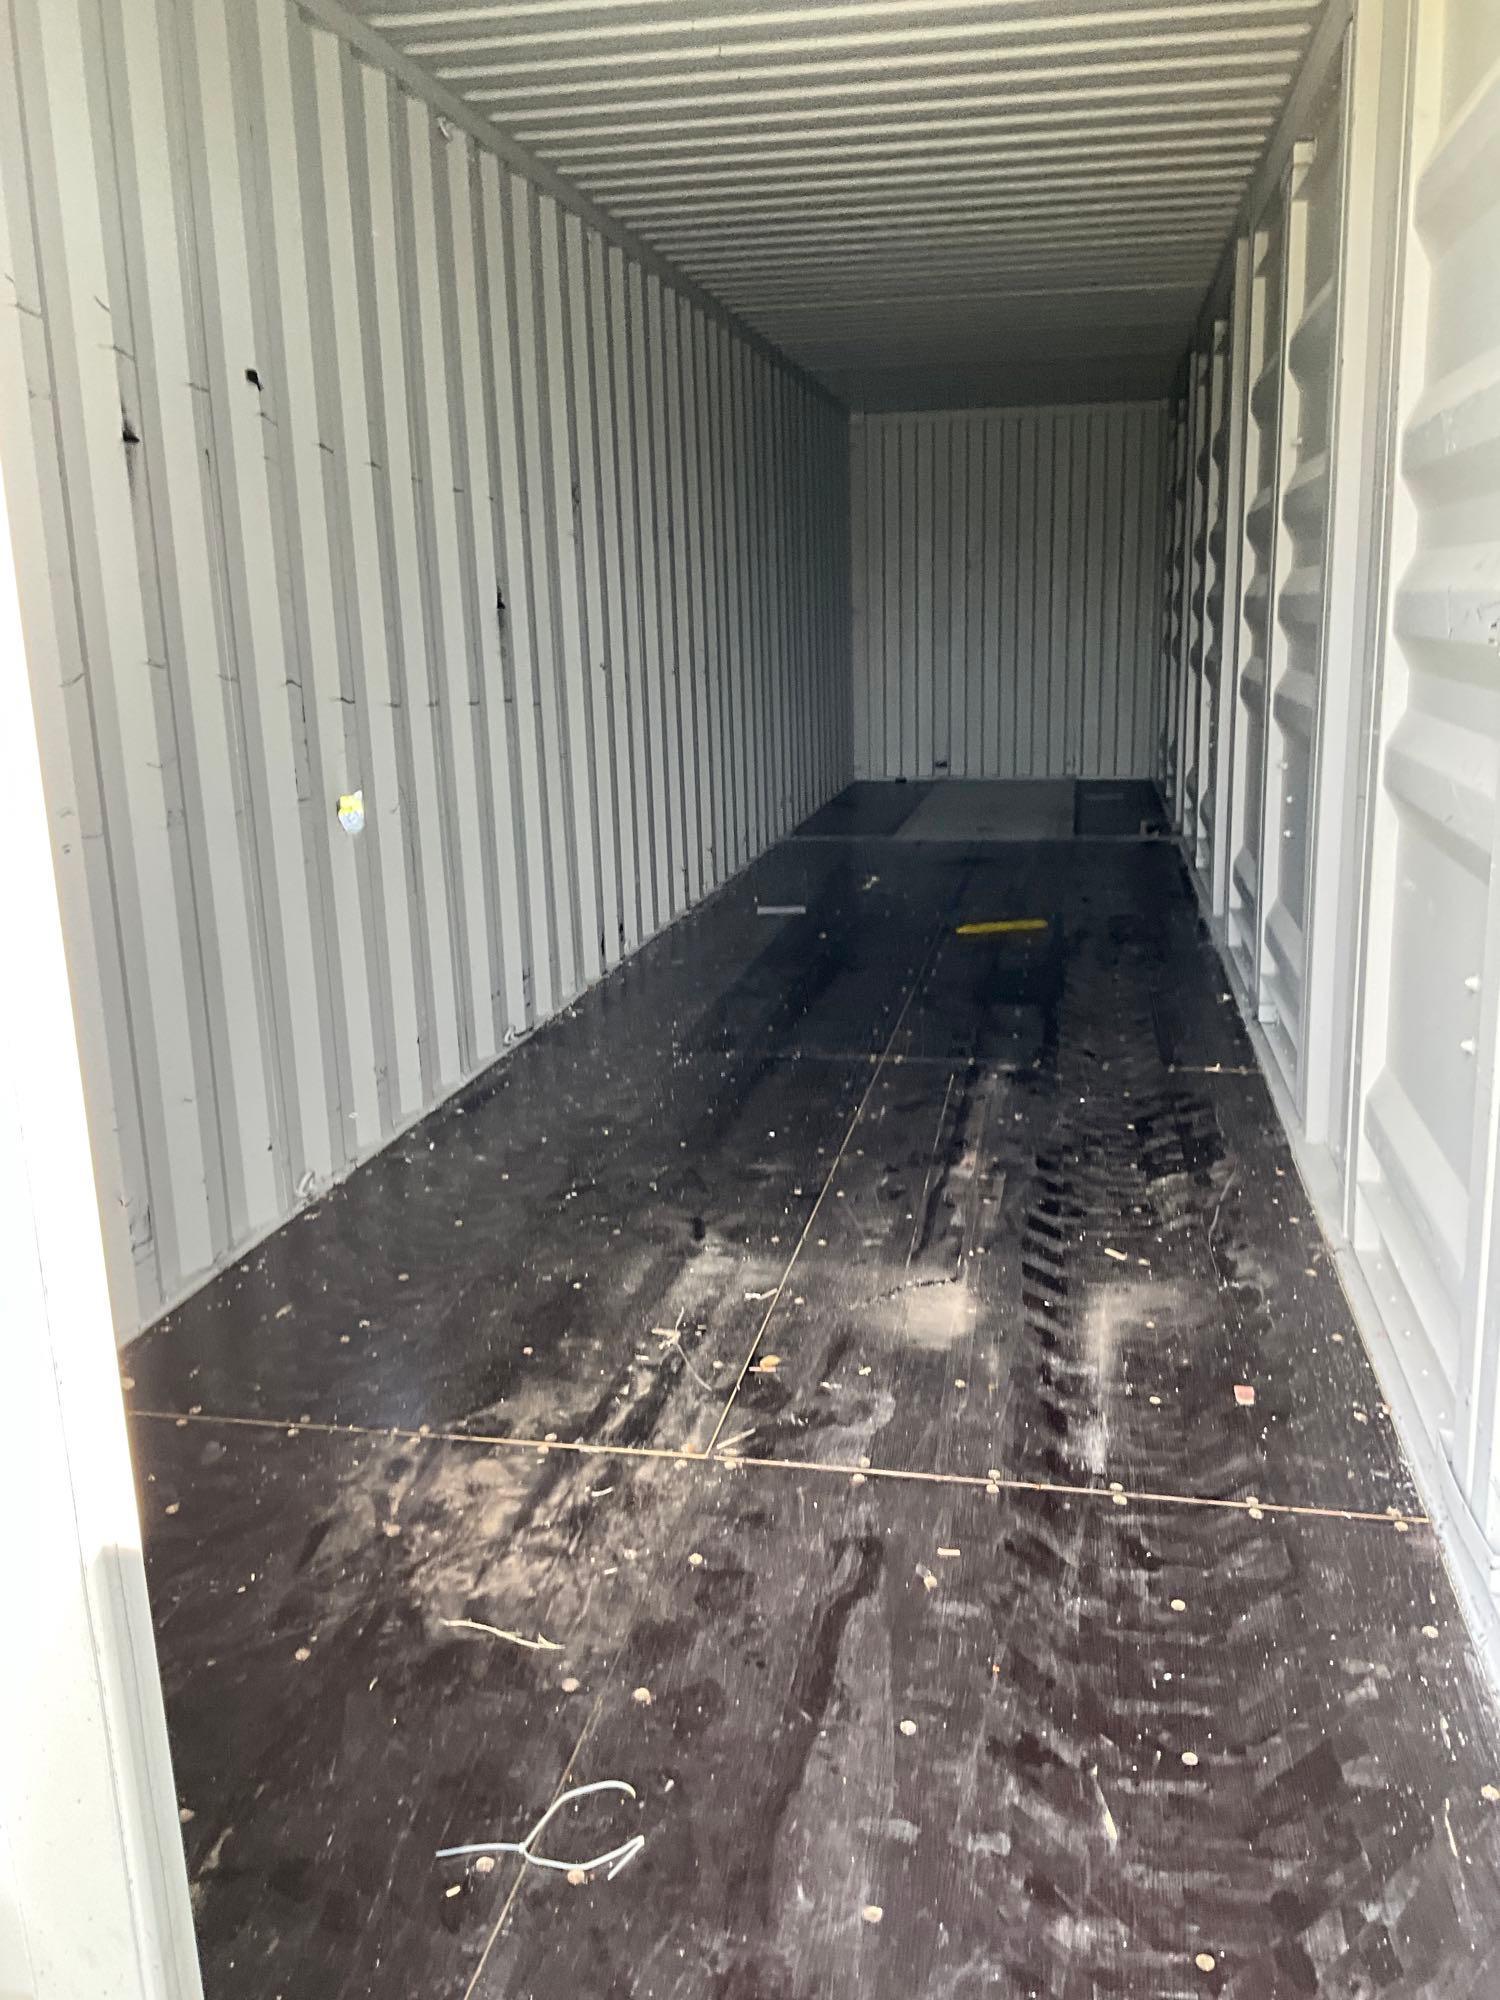 40 ft container 5 door